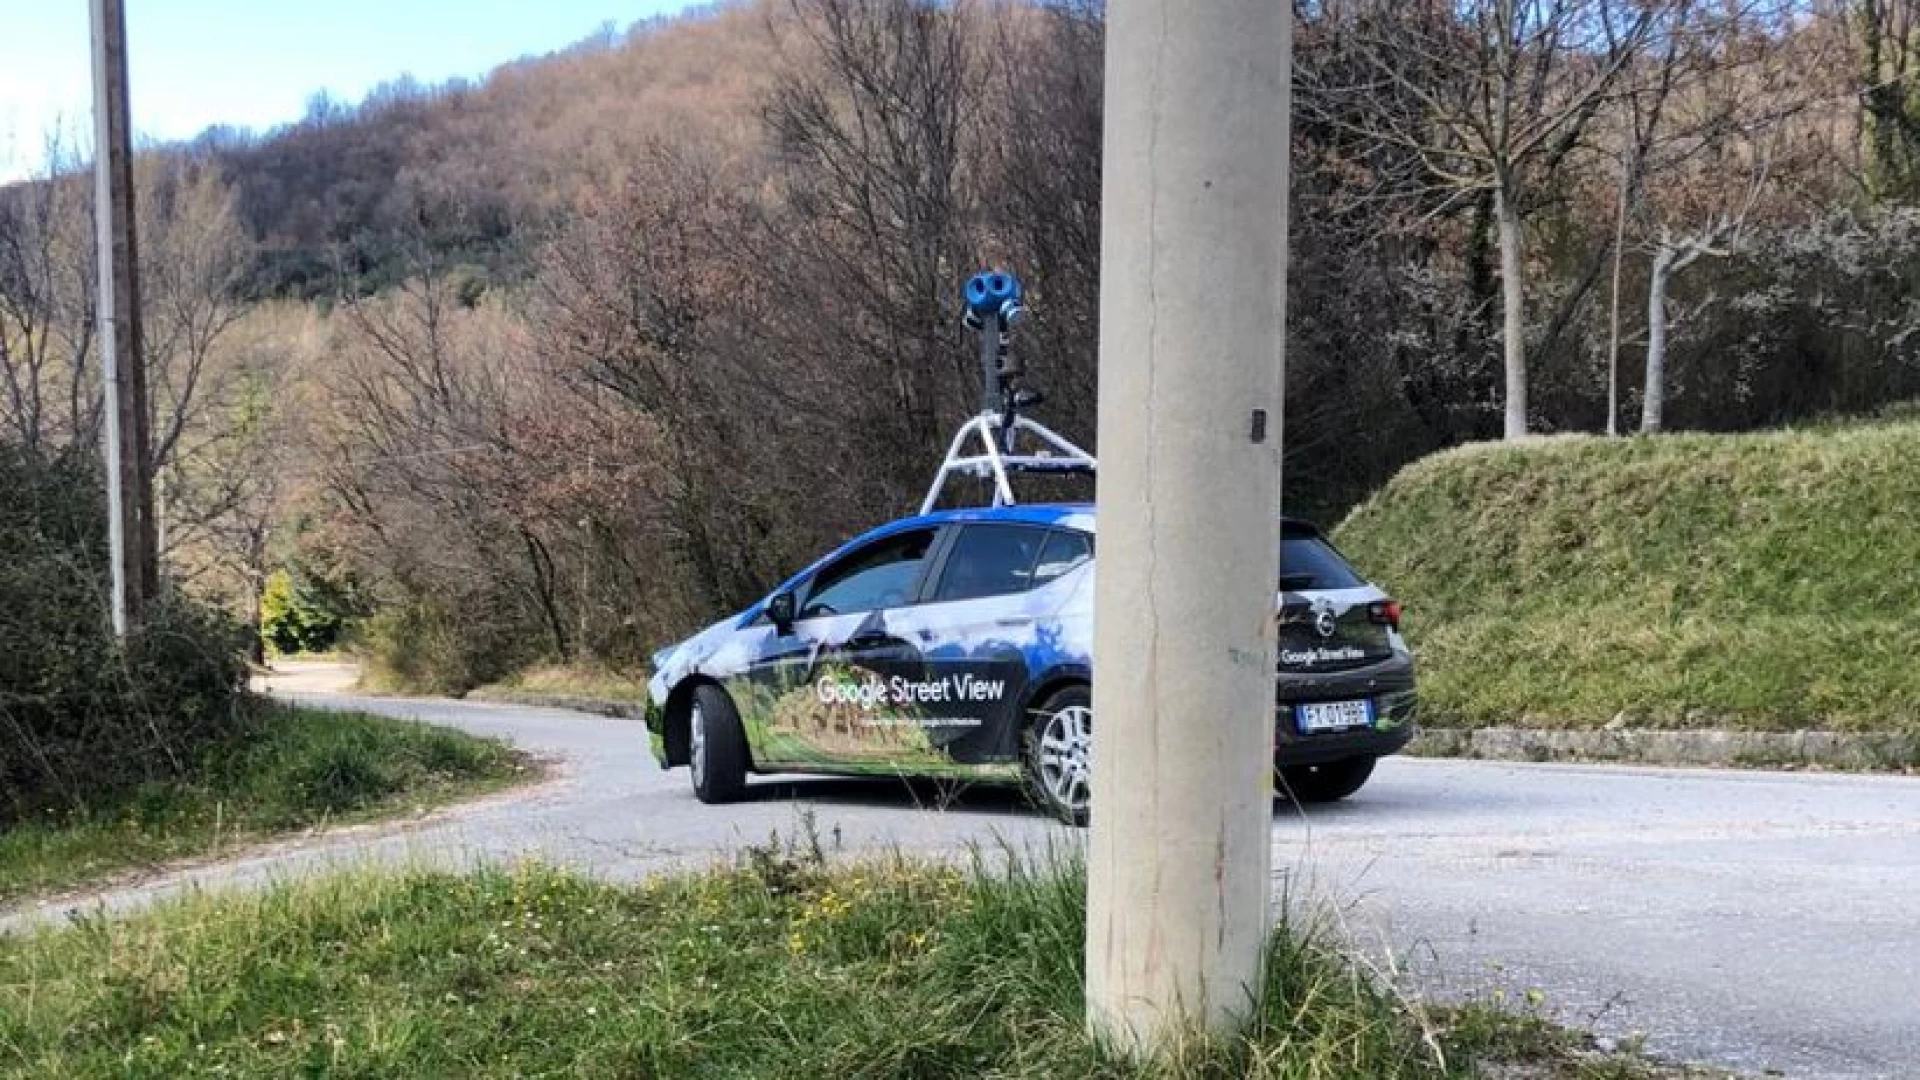 Colli a Volturno: la Google Street View car in paese per aggiornare le mappe del territorio.